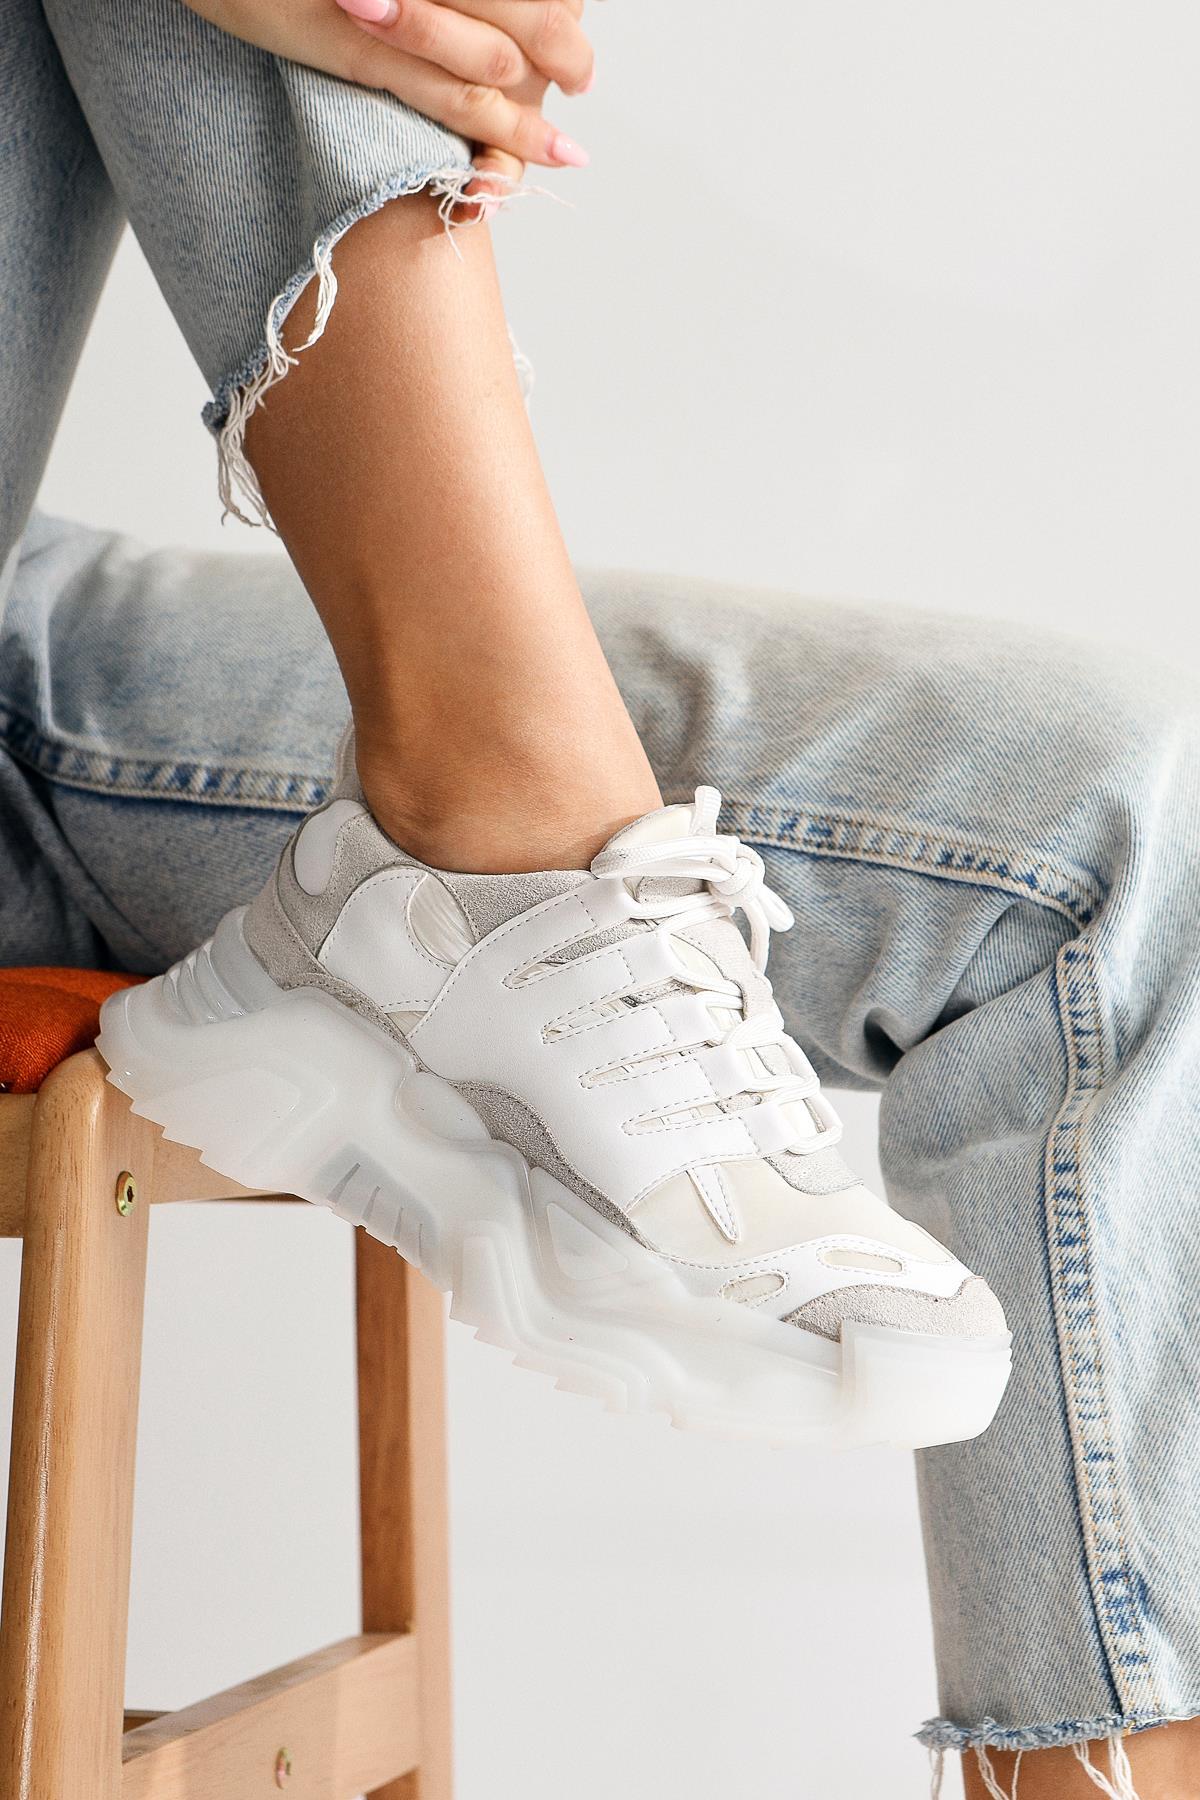 Willa Beyaz Gri Comfort Taban Spor Ayakkabı | Limoya.com ile Modayı Keşfet!